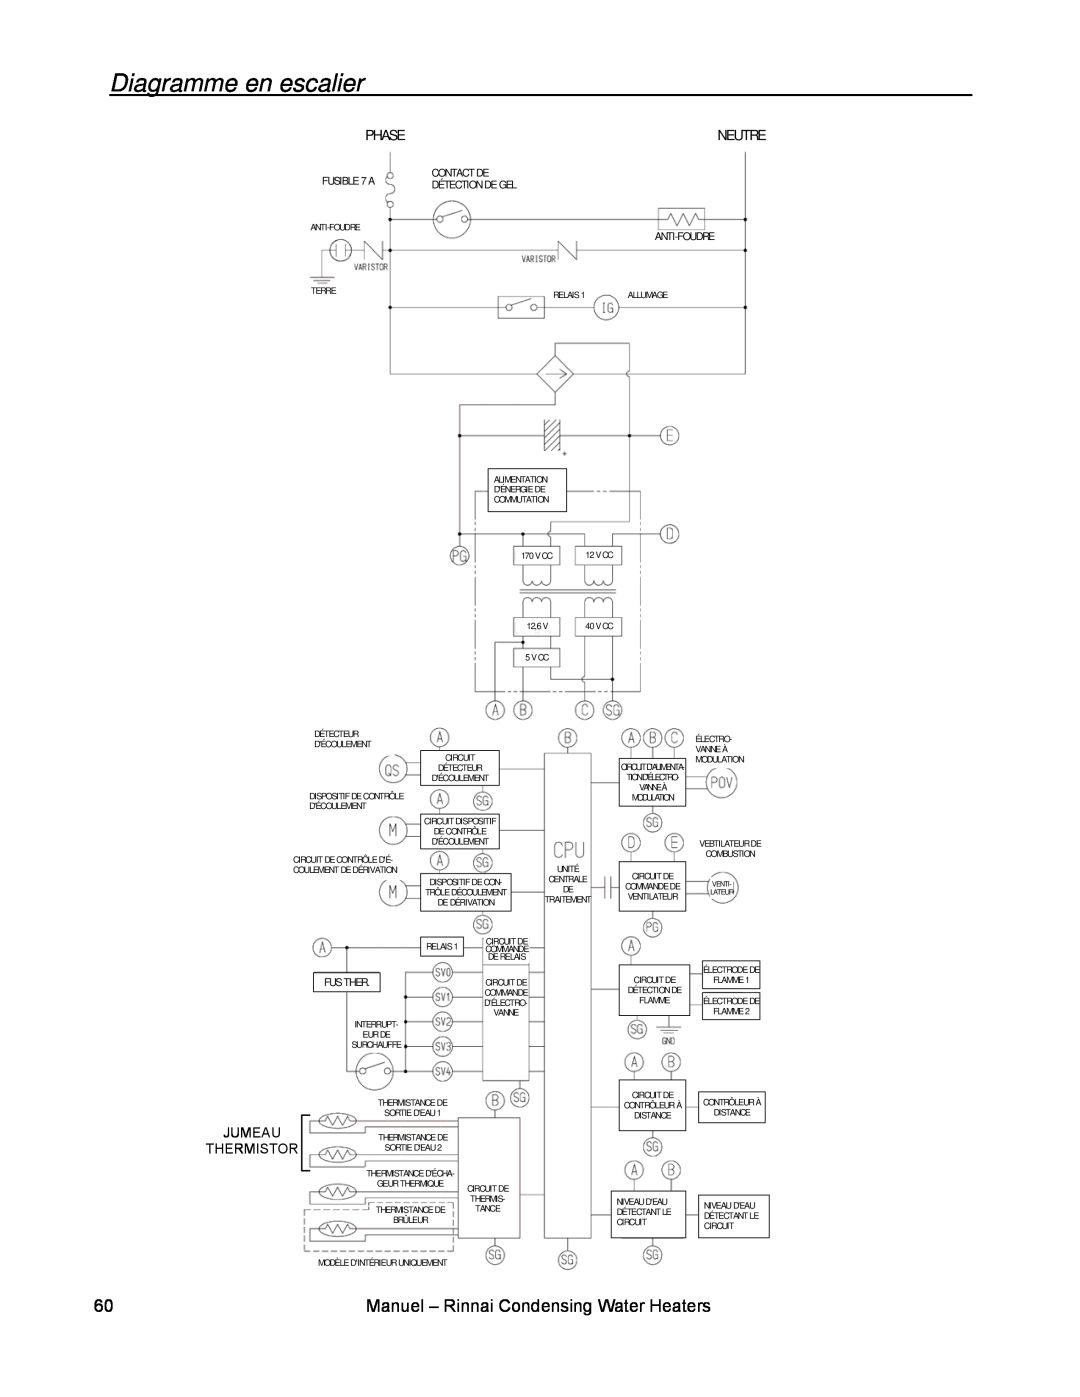 Rinnai RC98I Diagramme en escalier, Phase, Neutre, Jumeau Thermistor, FUSIBLE 7 A, Contact De Détection De Gel Anti-Foudre 